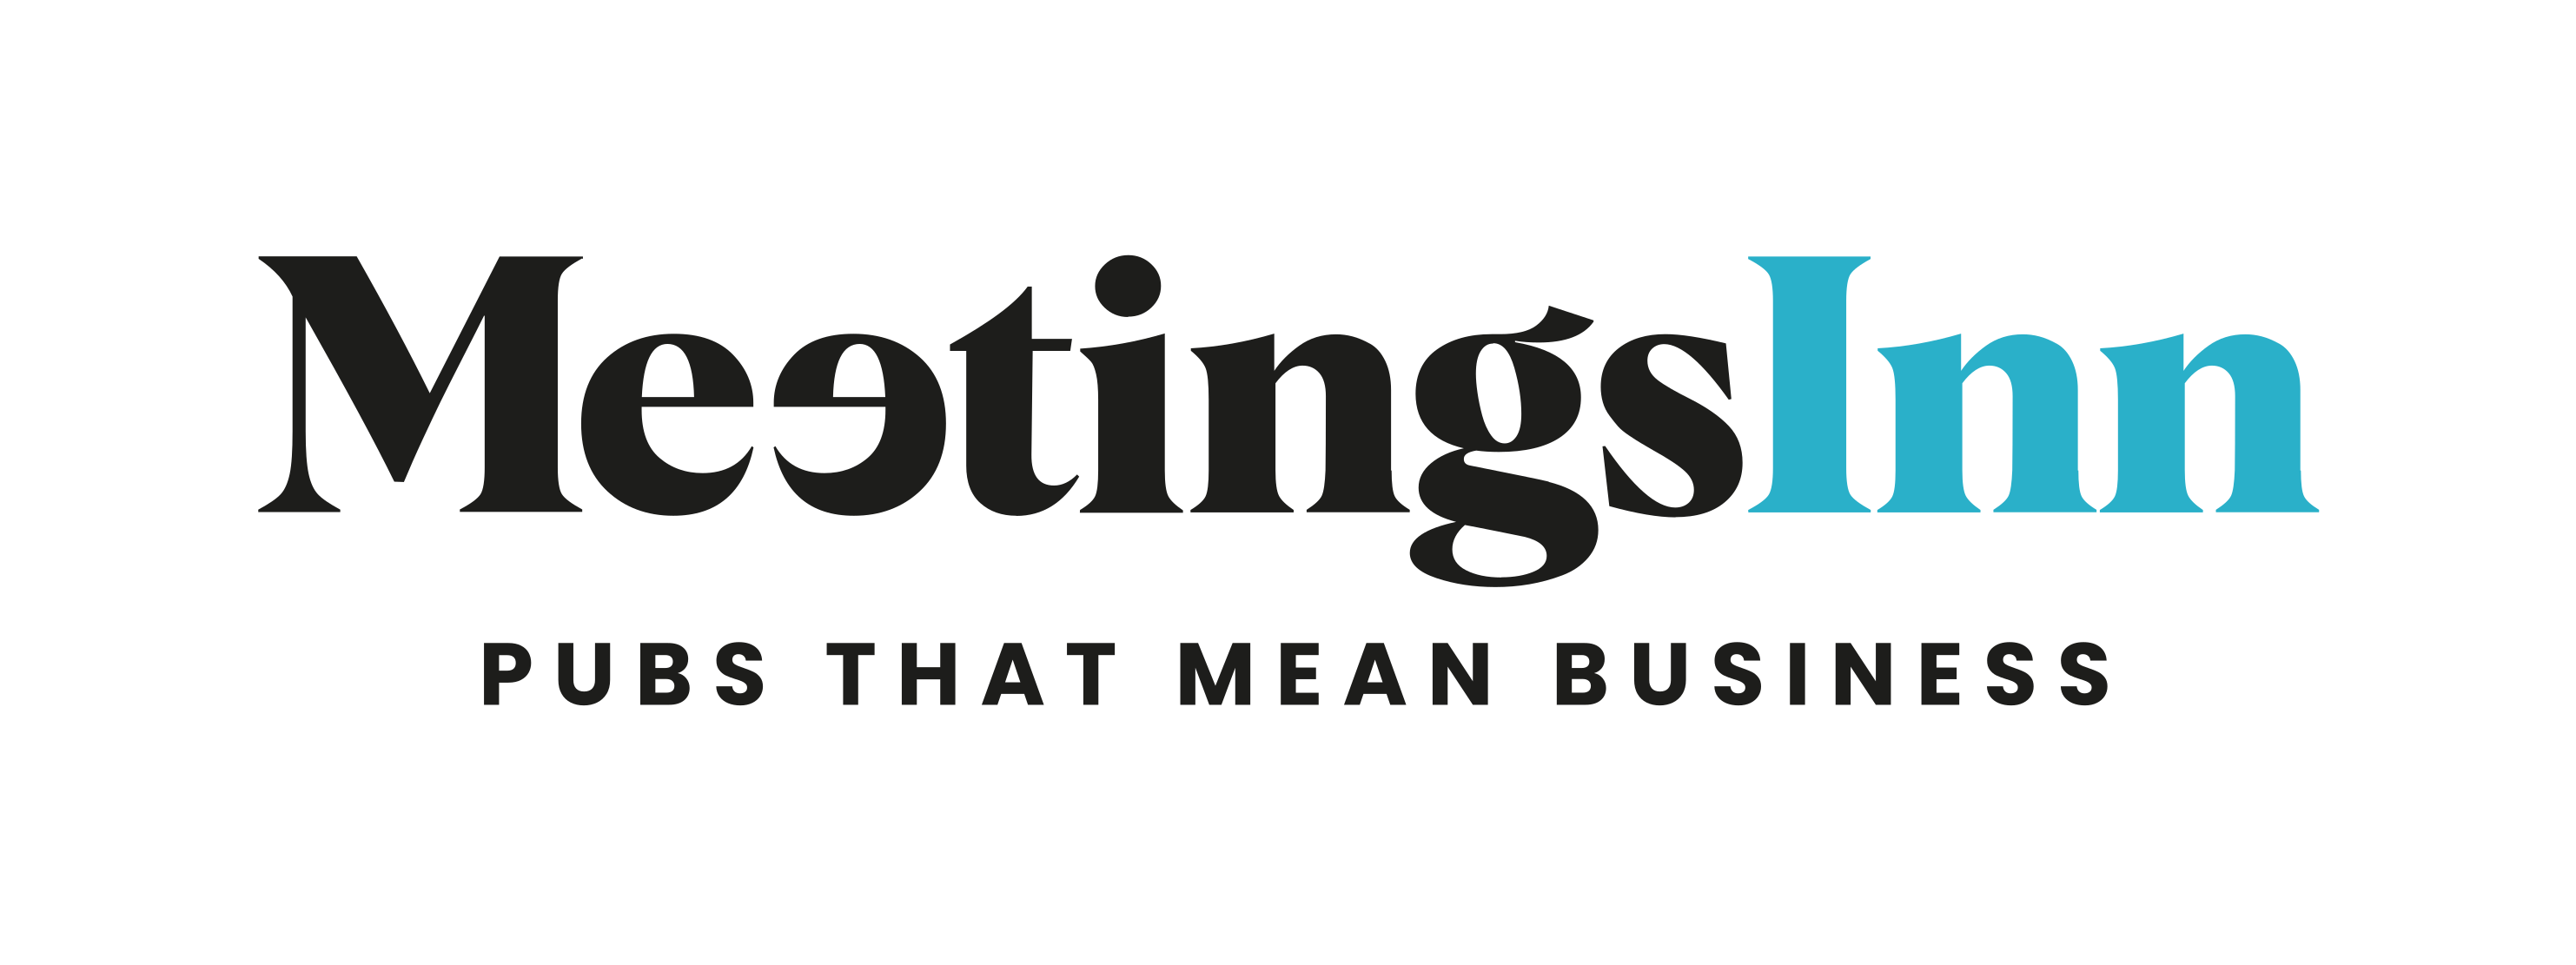 MeetingsInn logo